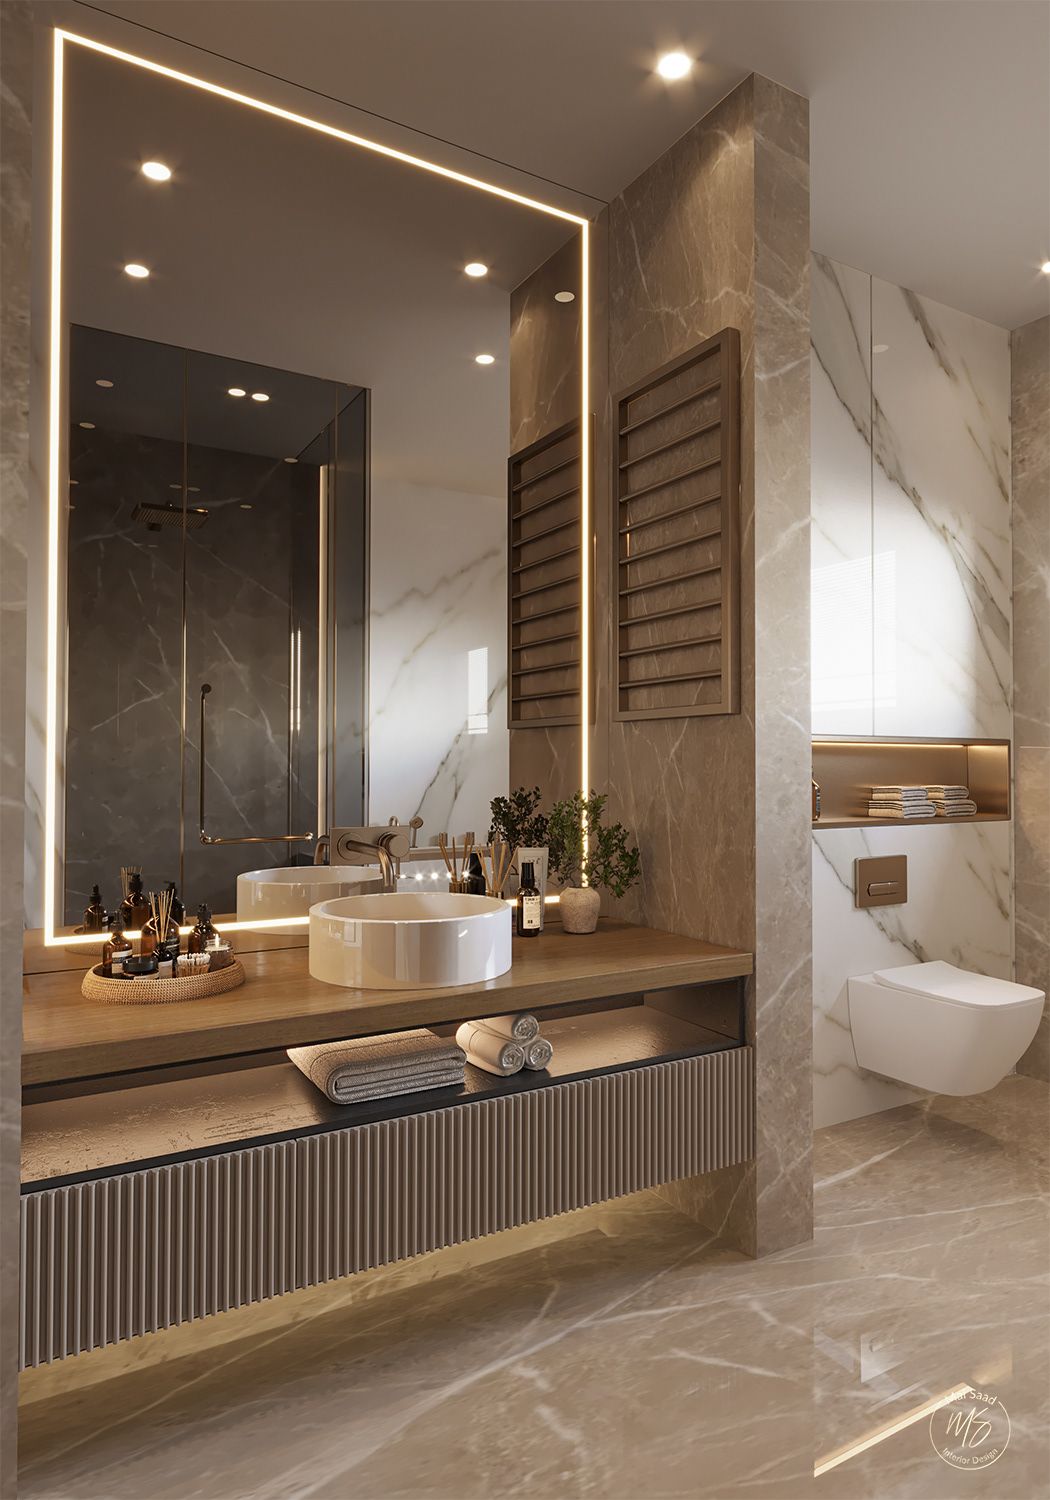 Basin Elegance: Elevating Your Bathroom with Stylish Basins